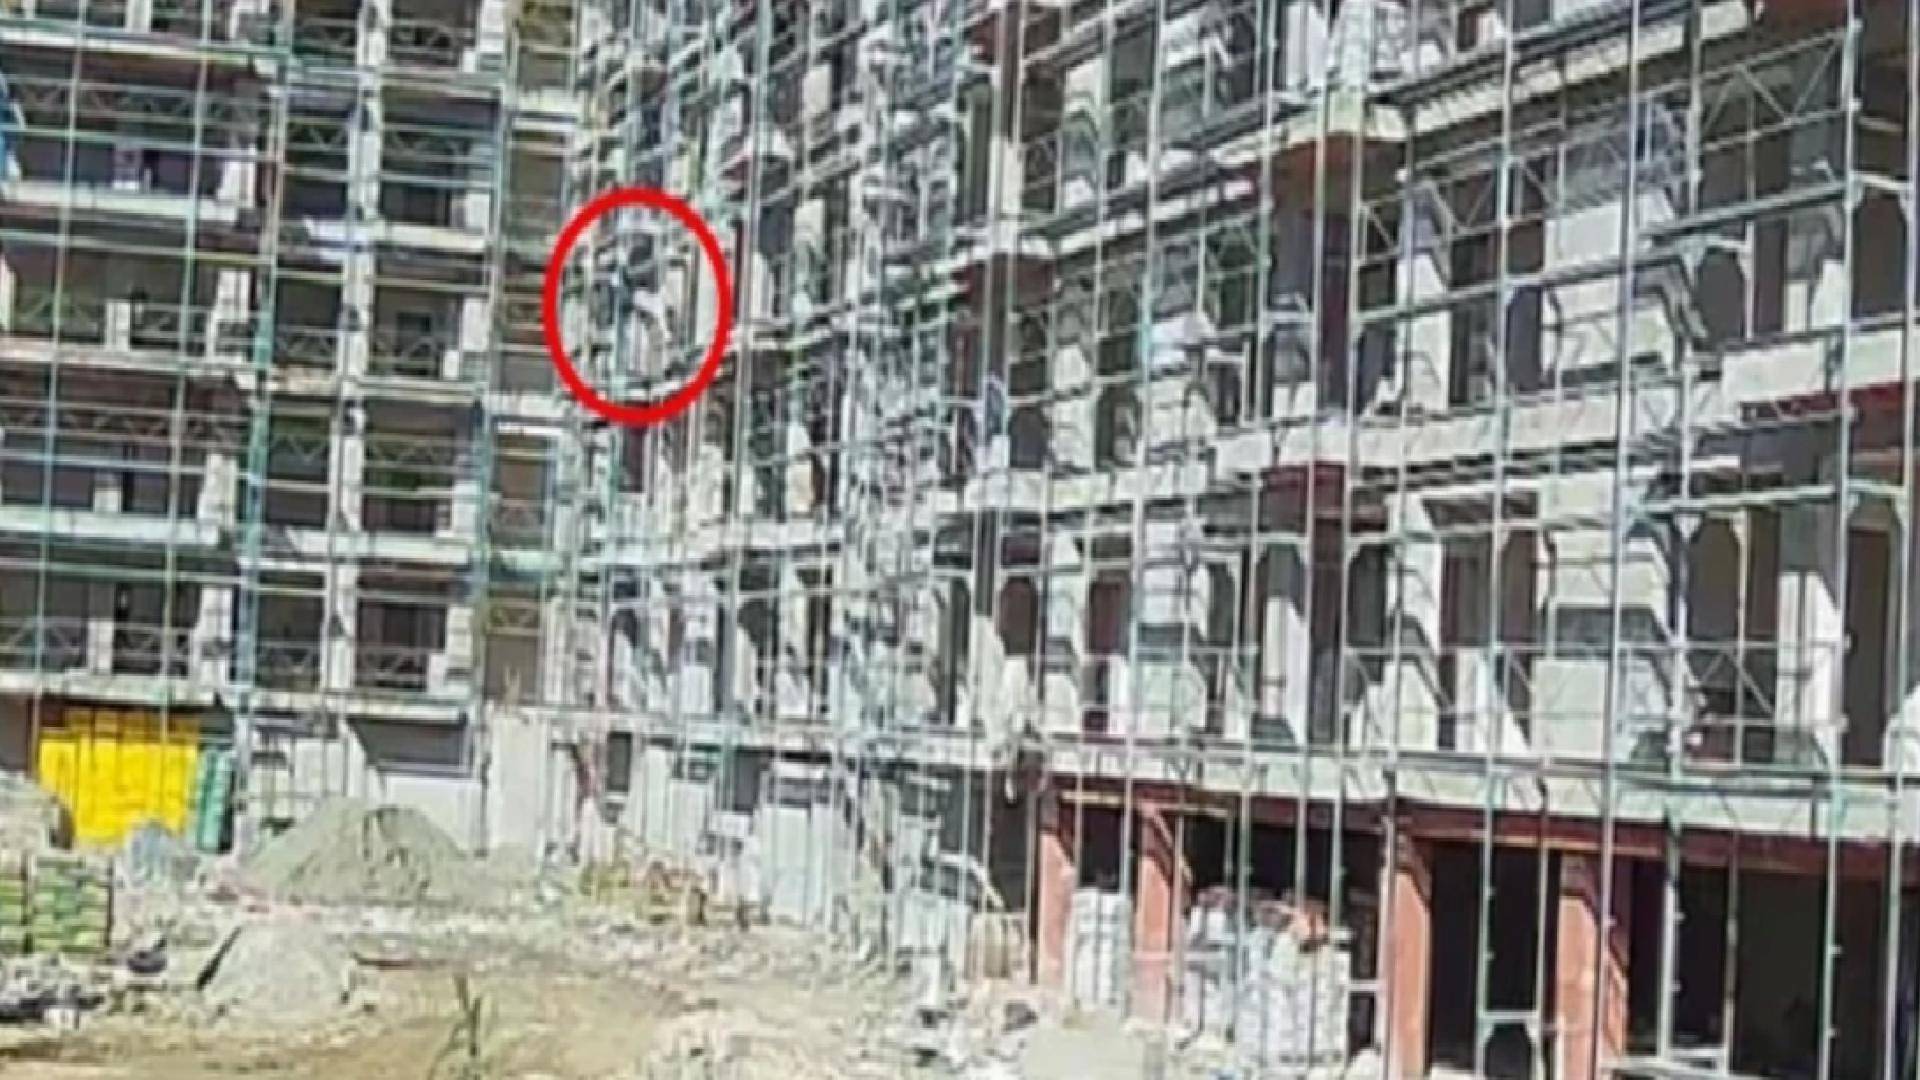 Antalya'da 19 yaşındaki inşaat işçisi 6. kattan düşerek hayatını kaybetti